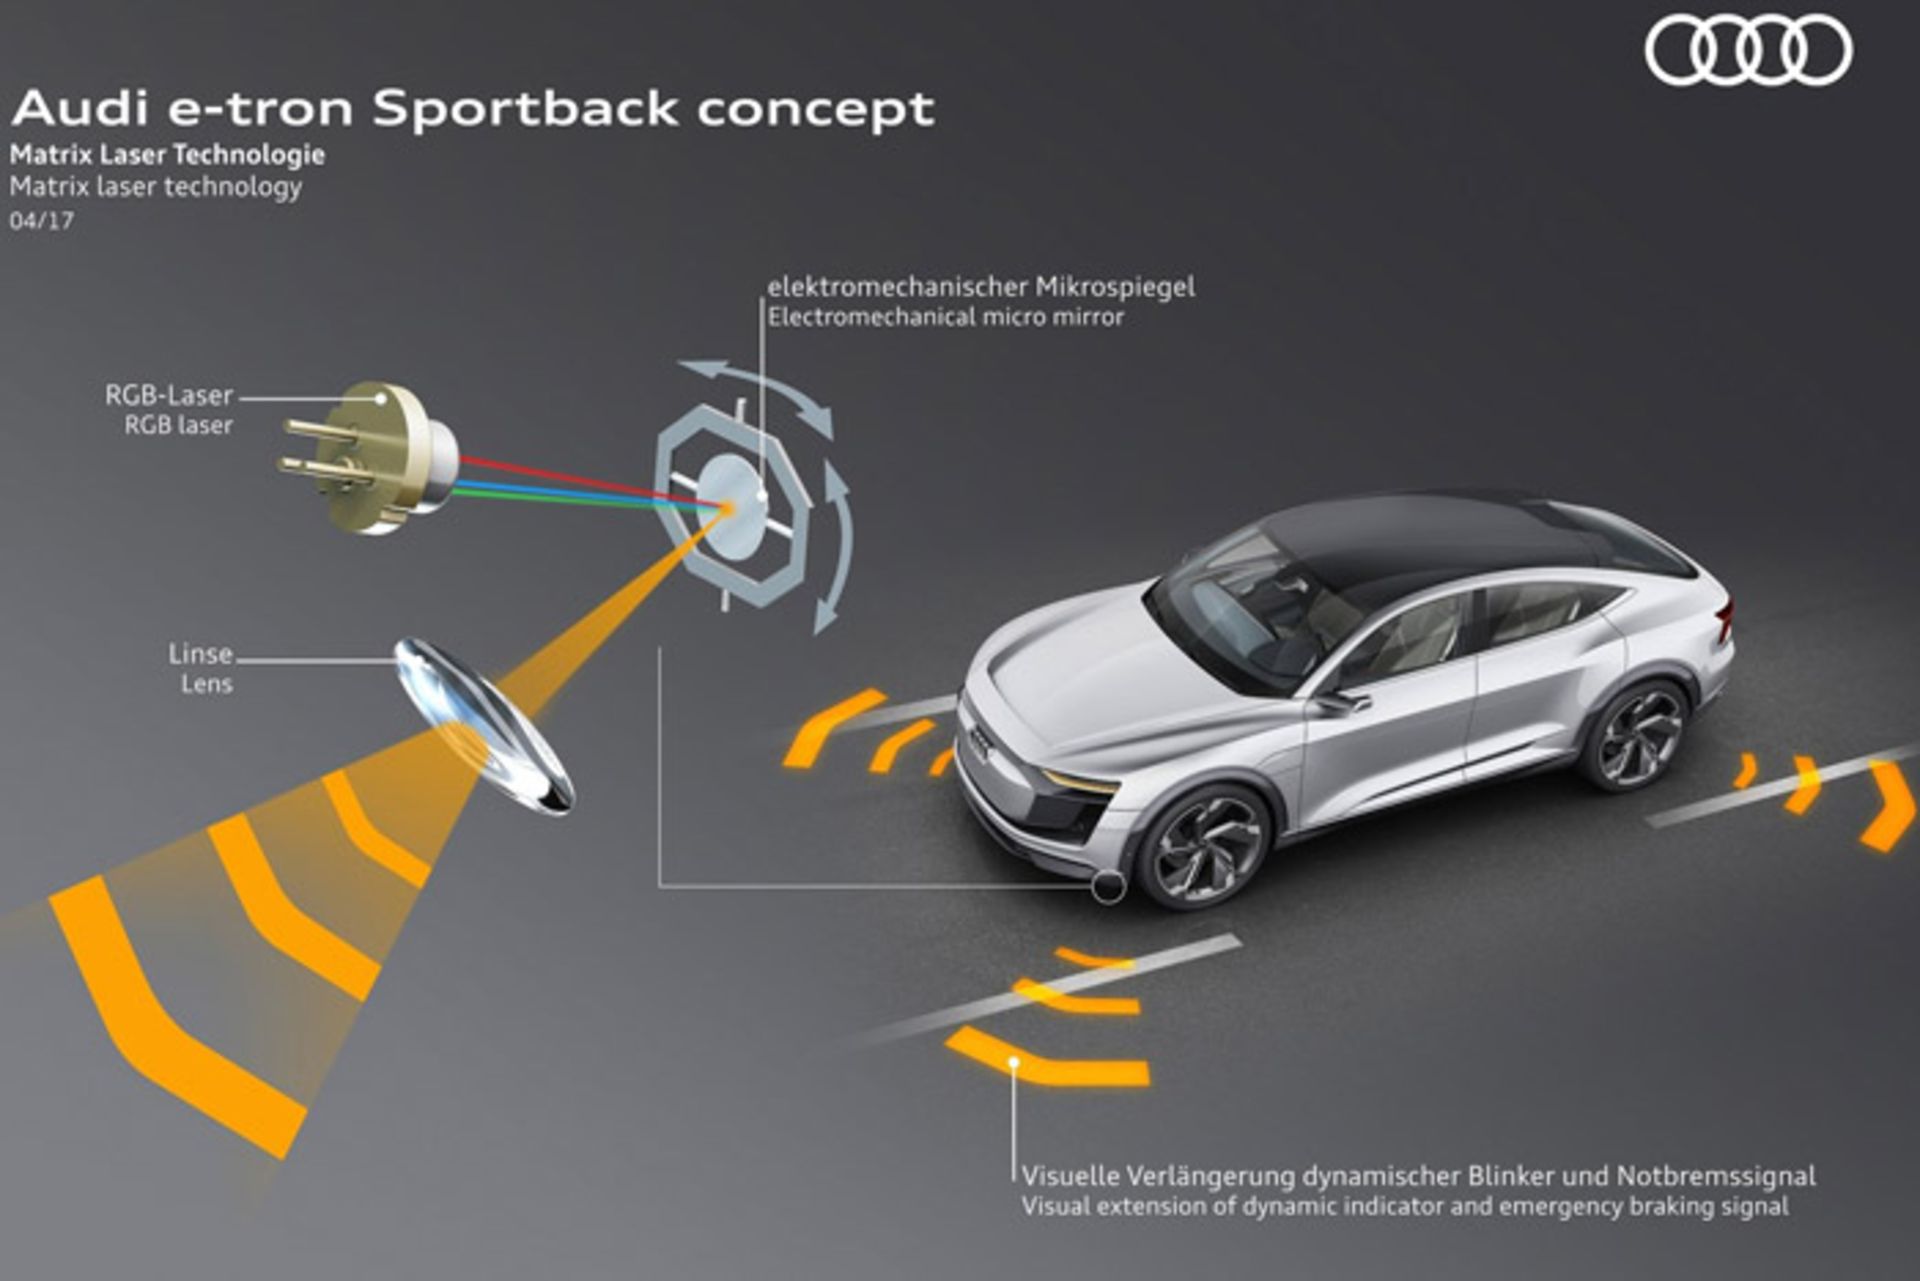 آئودی مفهومی الکتریکی E-Tron sportback